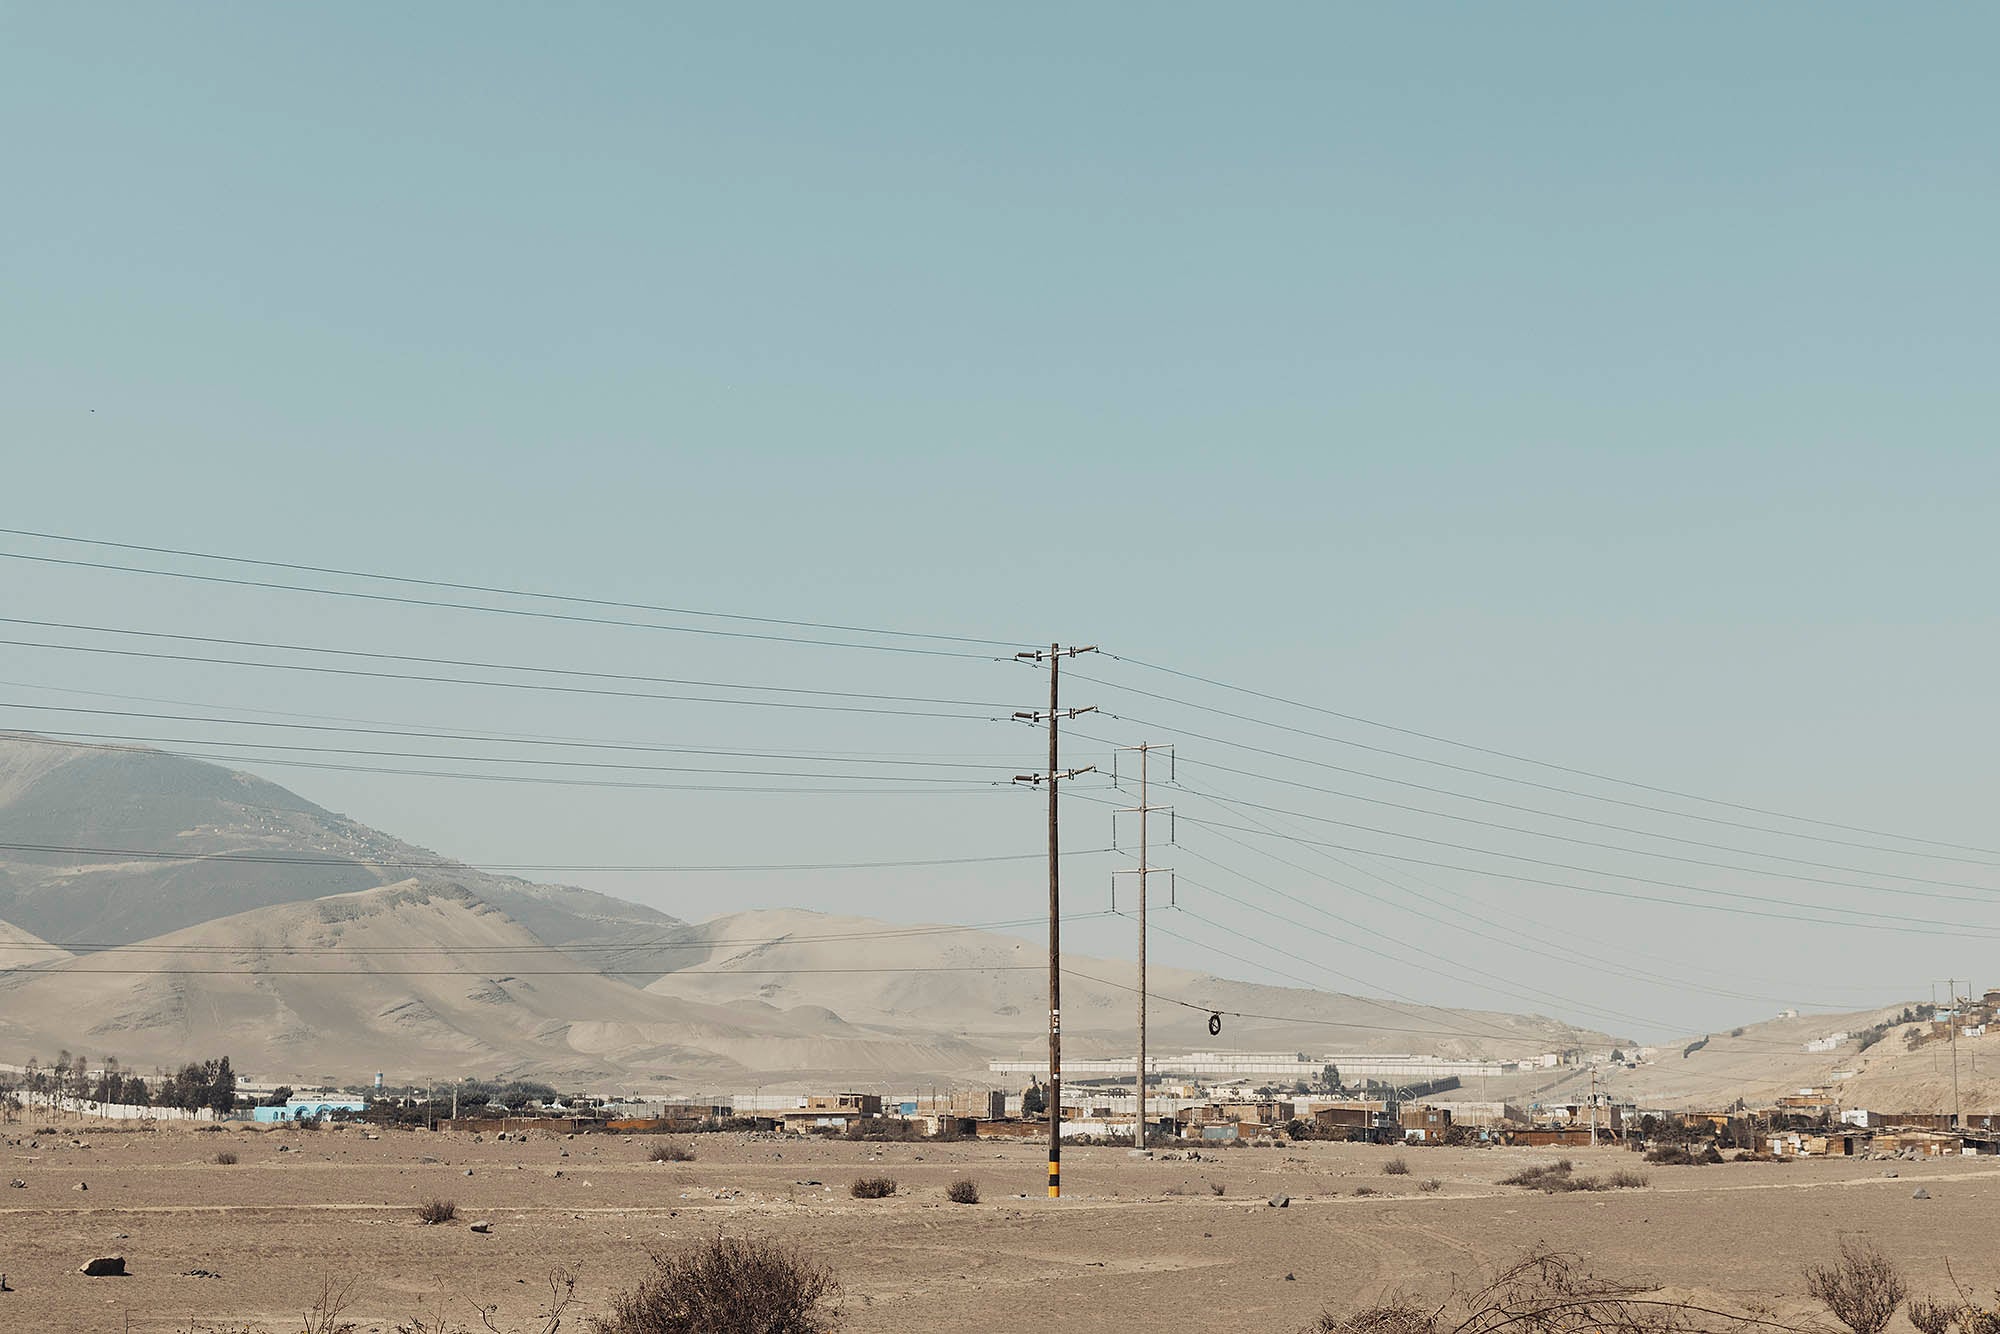 Poteau électrique photographié par devant des bidonvilles et montagnes de sable visibles en arrière plan